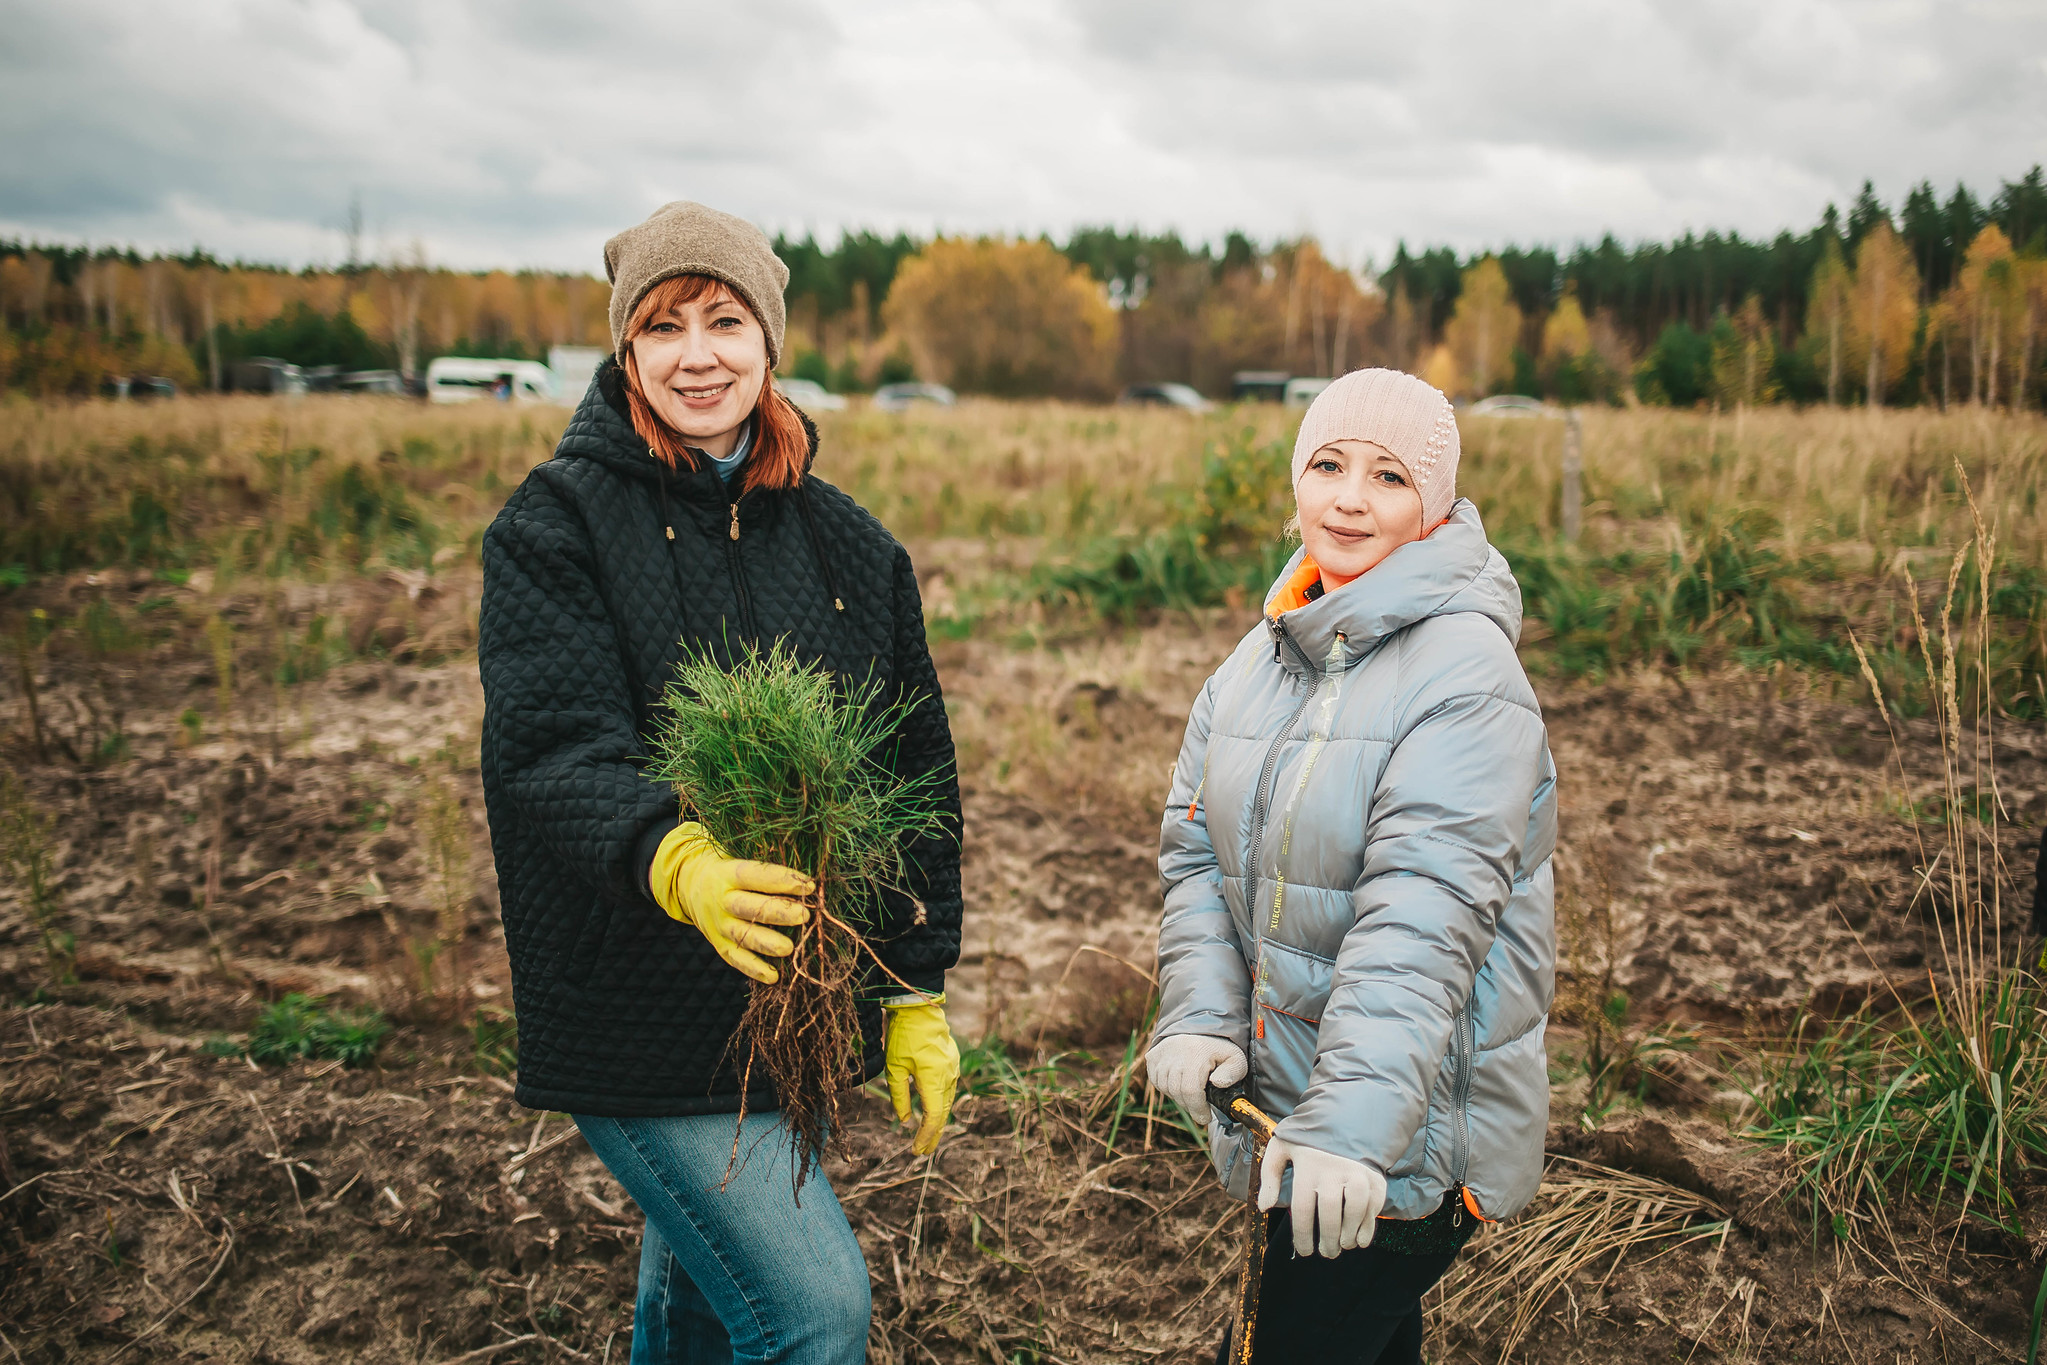 Проект «Посади лес» отметил заслуги российских женщин в восстановлении лесов - фото 1